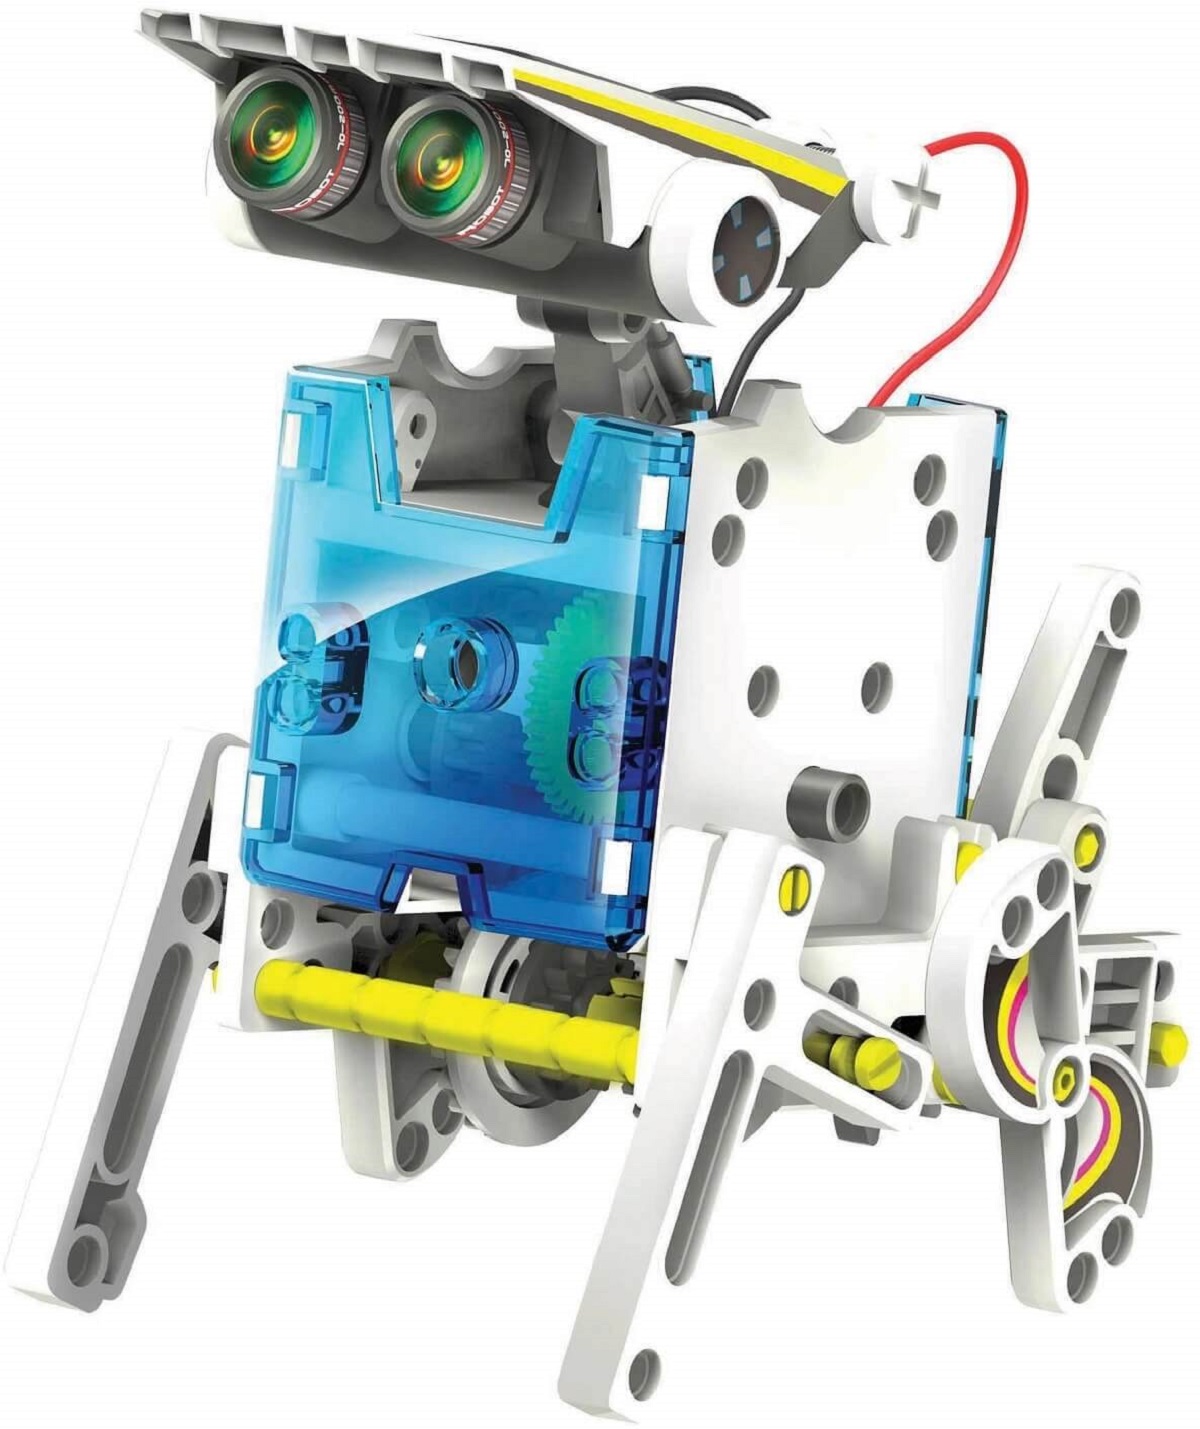 Kit robotica de constructie Roboti Solari 14 in 1